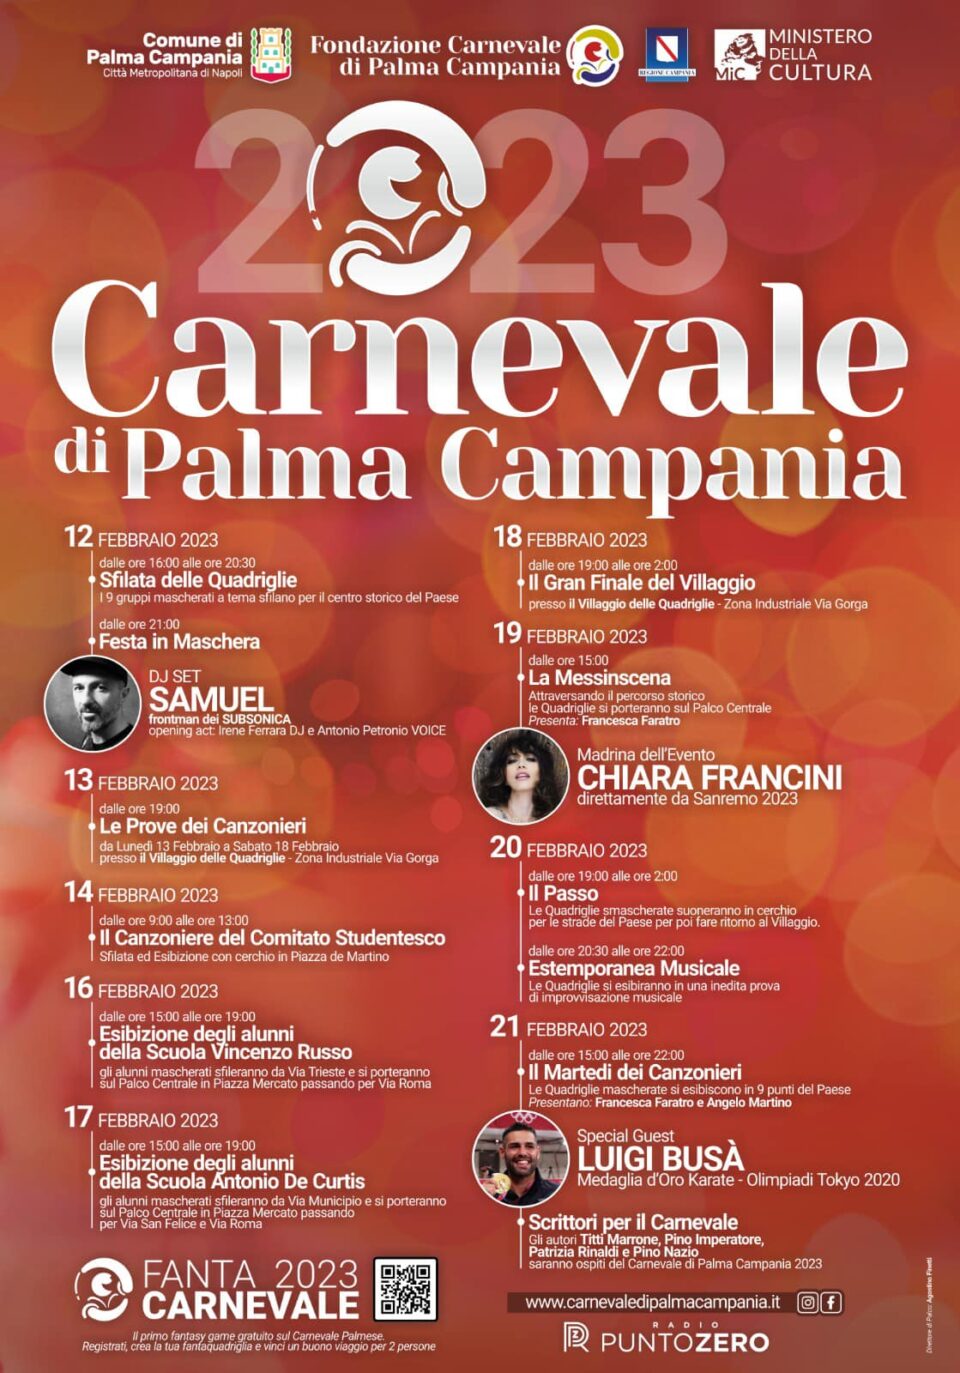 Carnevale di Palma Campania 2023: programma, orari e prezzi